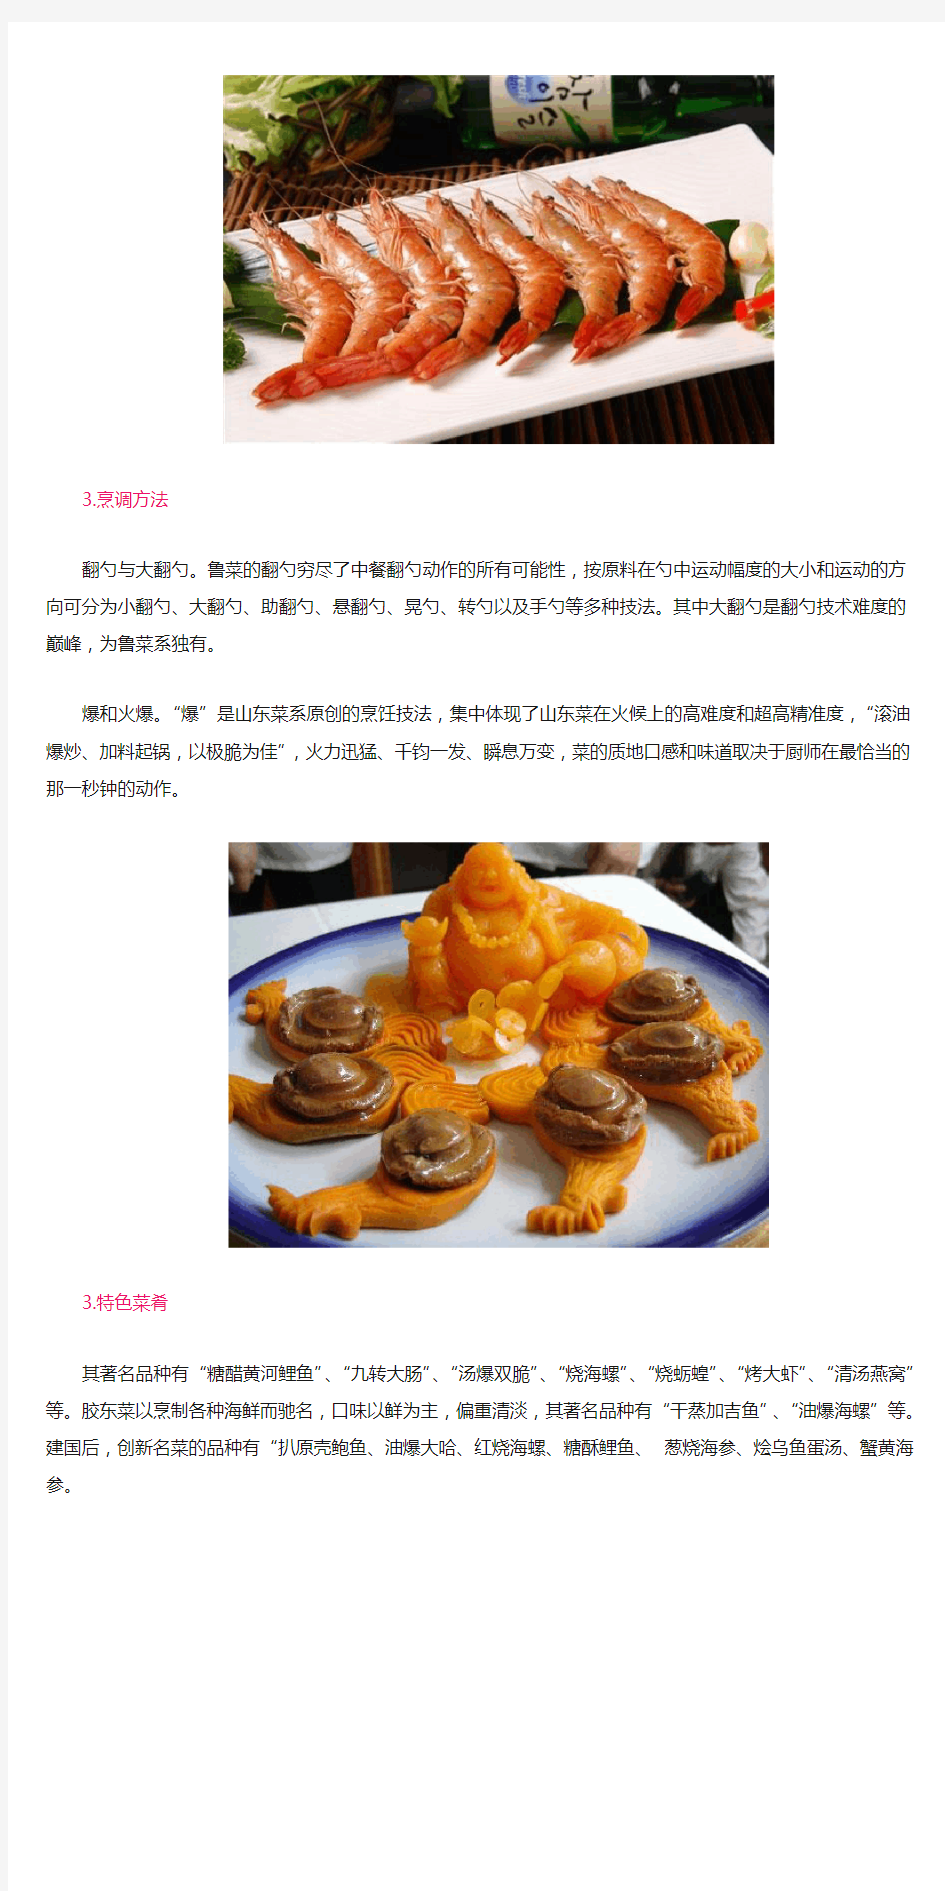 中国八大菜系之鲁菜